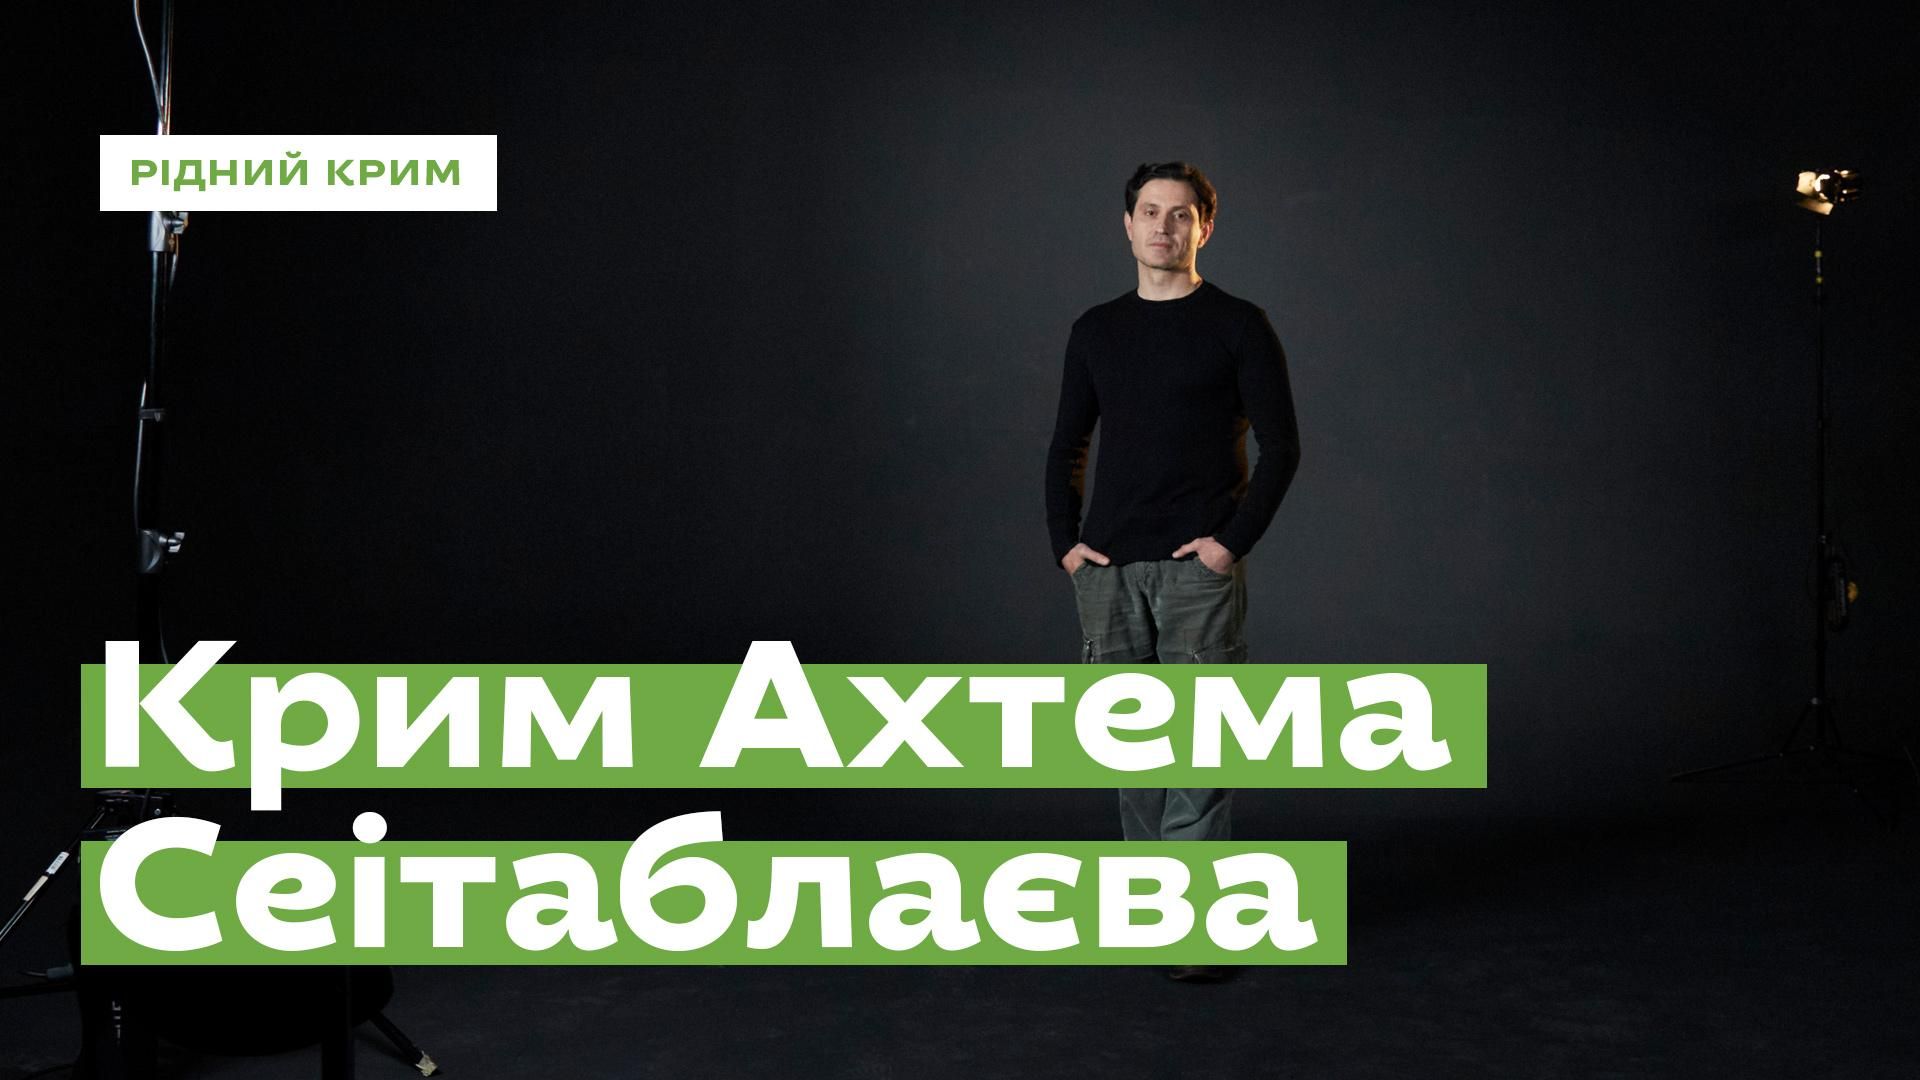 Режиссер Ахтем Сеитаблаев поделился воспоминаниями о Крыме: видео